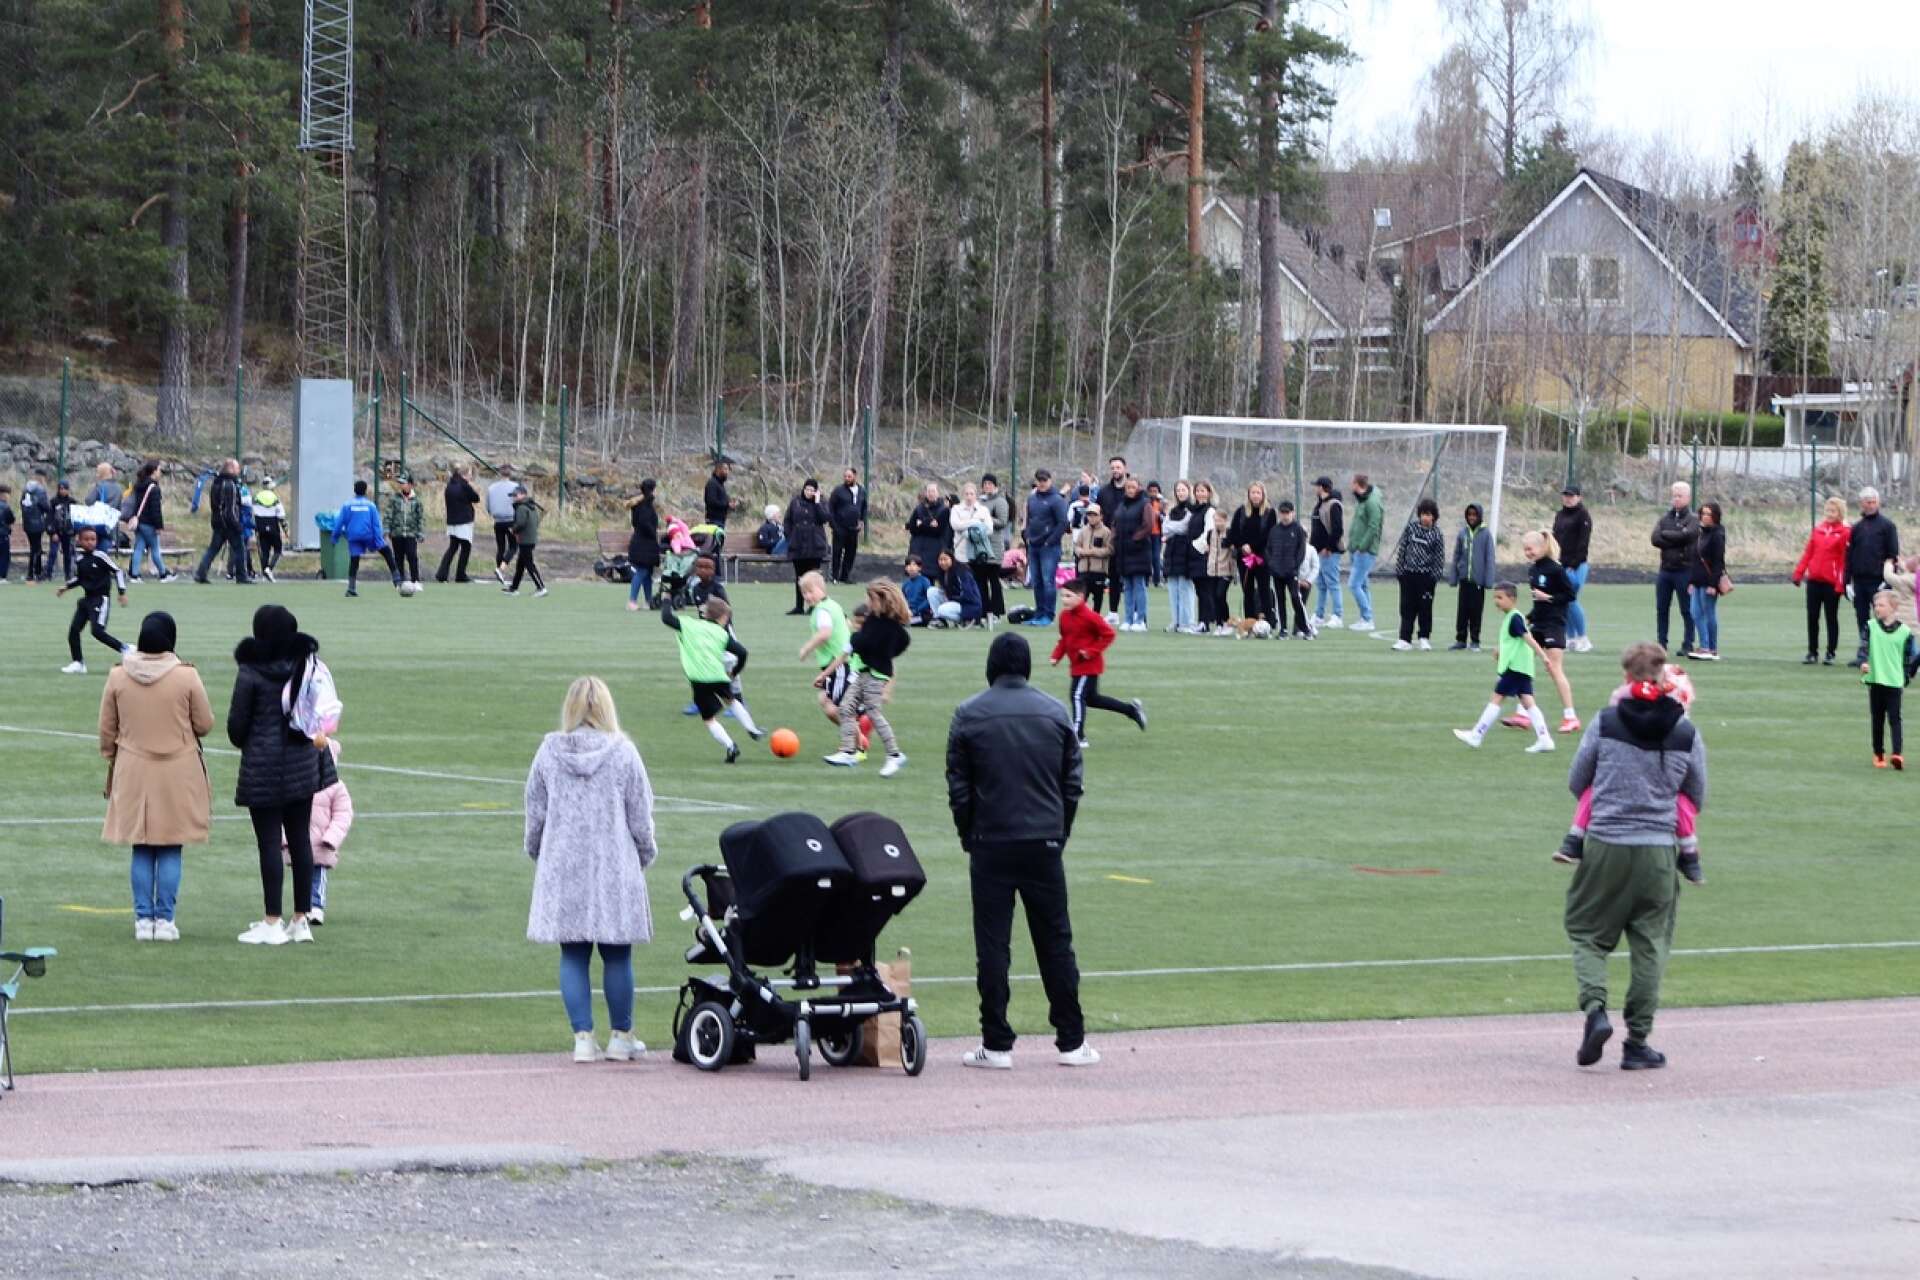 Klassfotbollen 2022. Som vanligt var det mycket folk i rörelse på Mossängen.